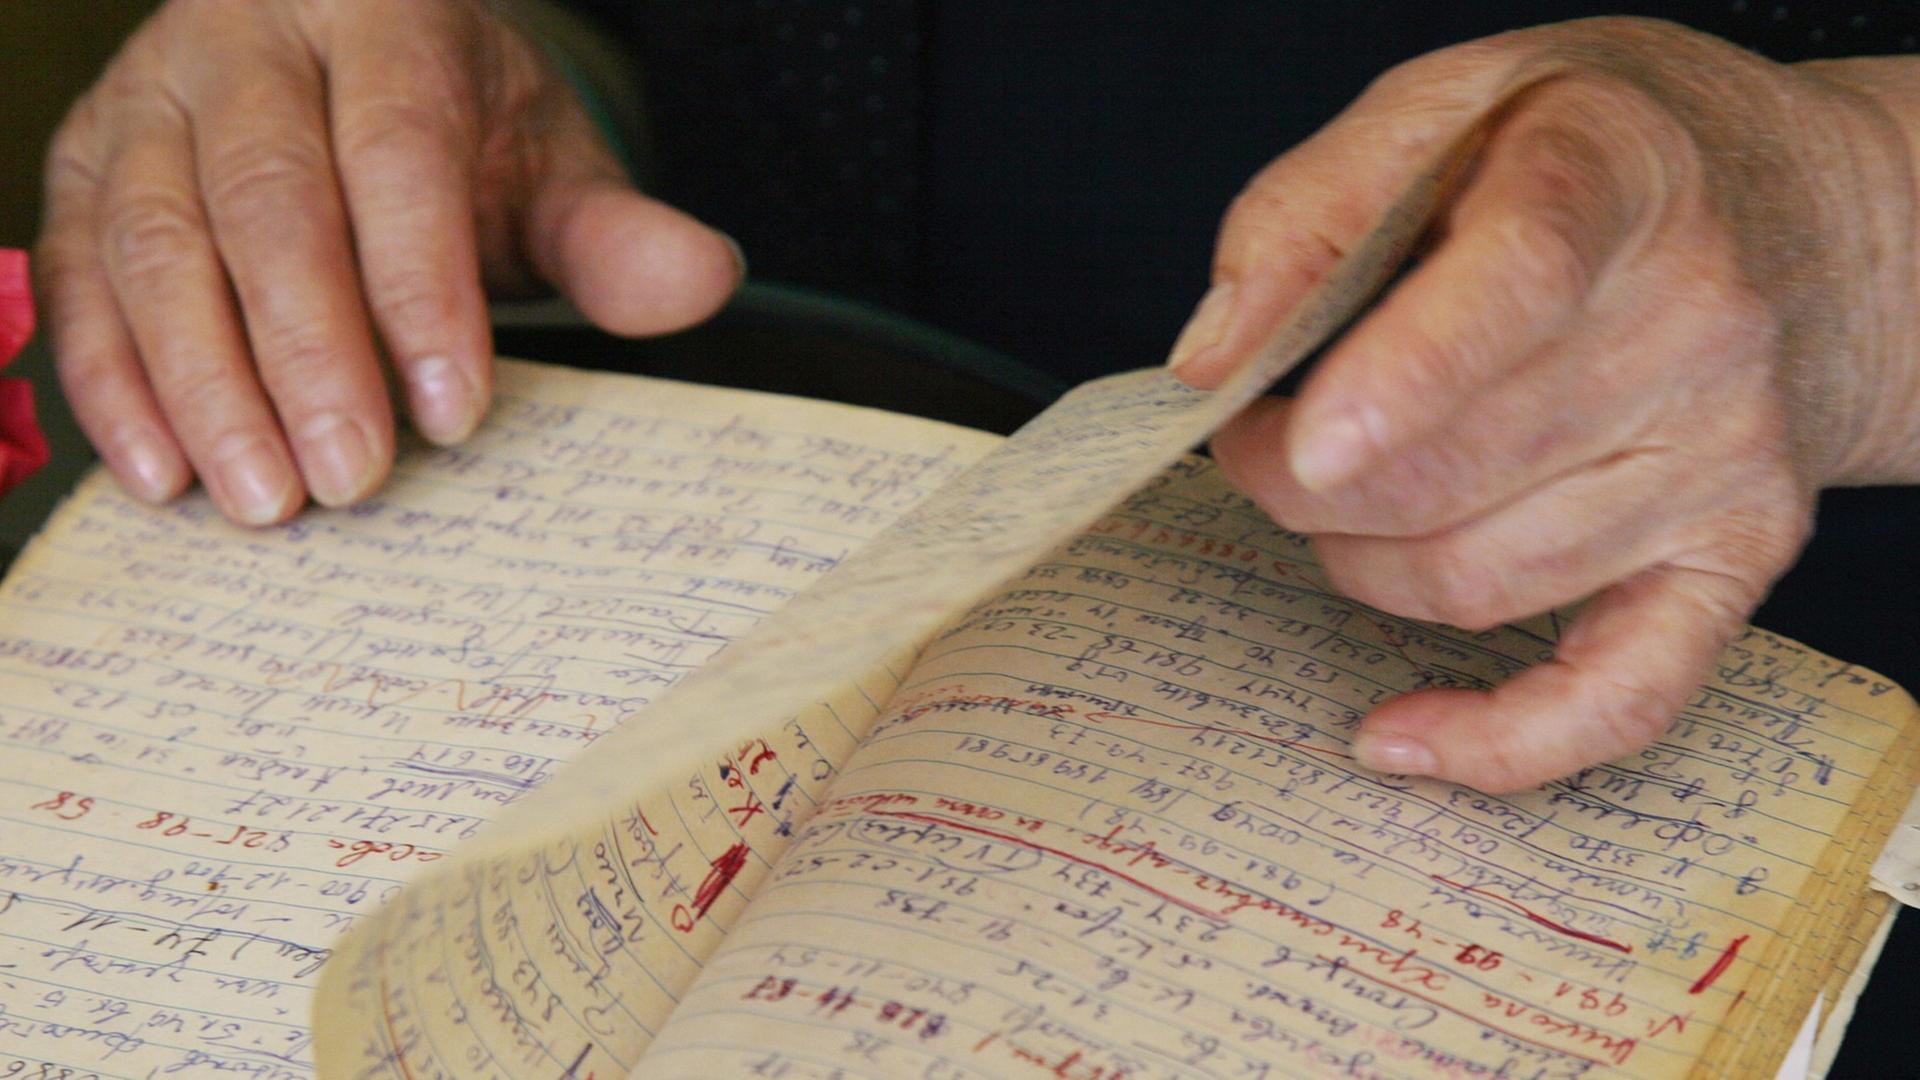 Eine ältere Frau blättert in einem Notizbuch - ihre Hände sind zu sehen.